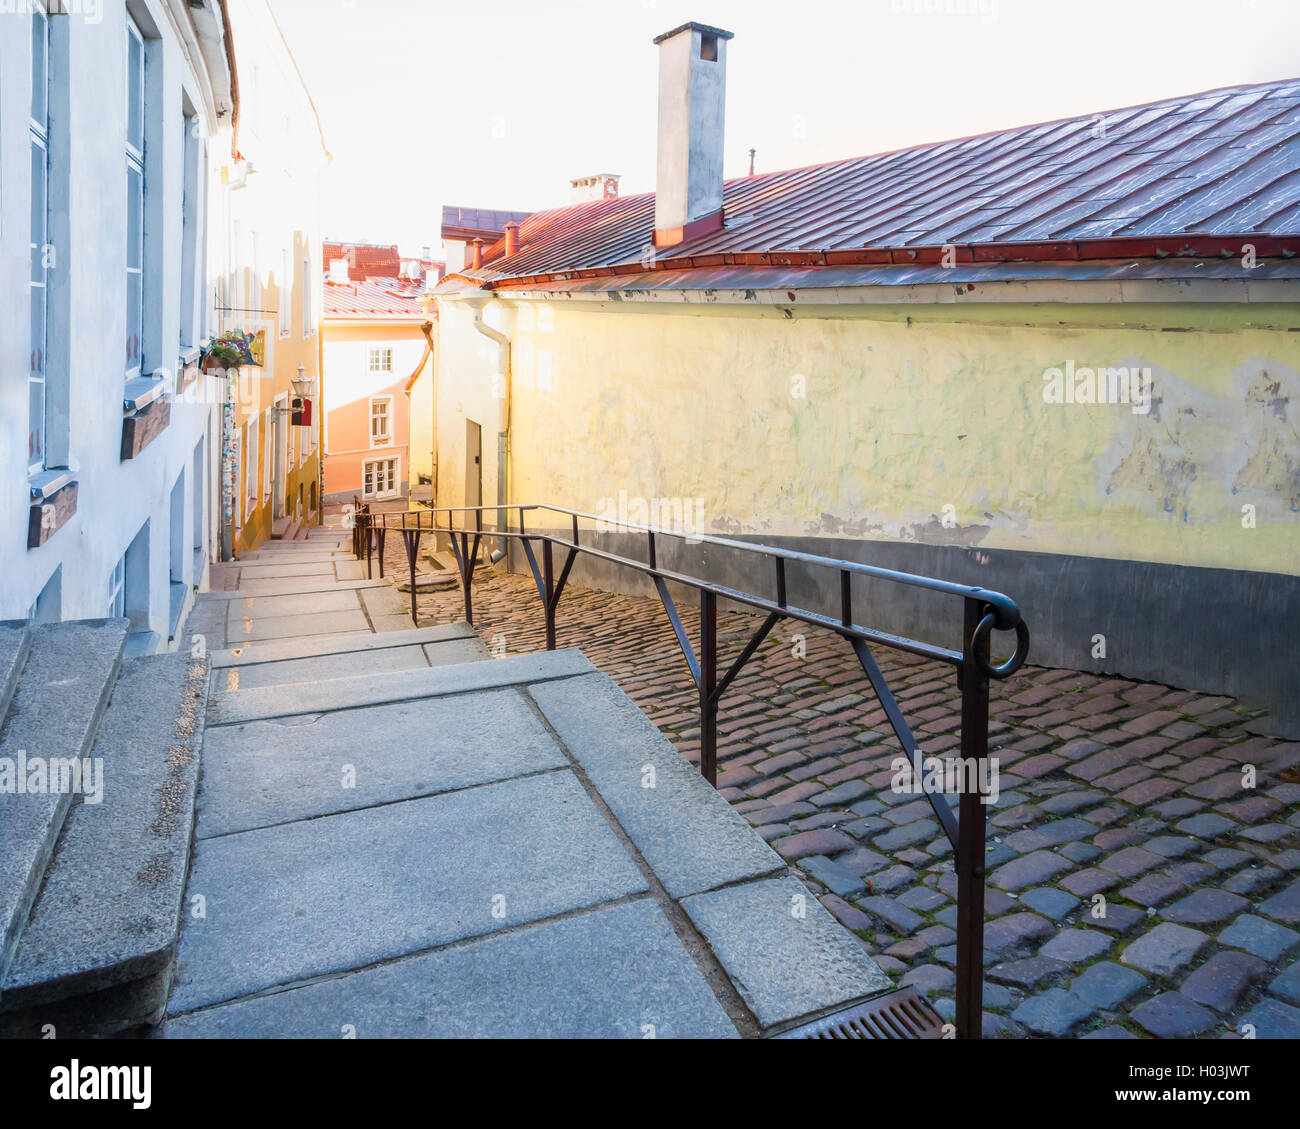 La rue longue avec escalier appelé Luhike Jalg (patte courte) dans la vieille ville de Tallinn, Estonie Banque D'Images